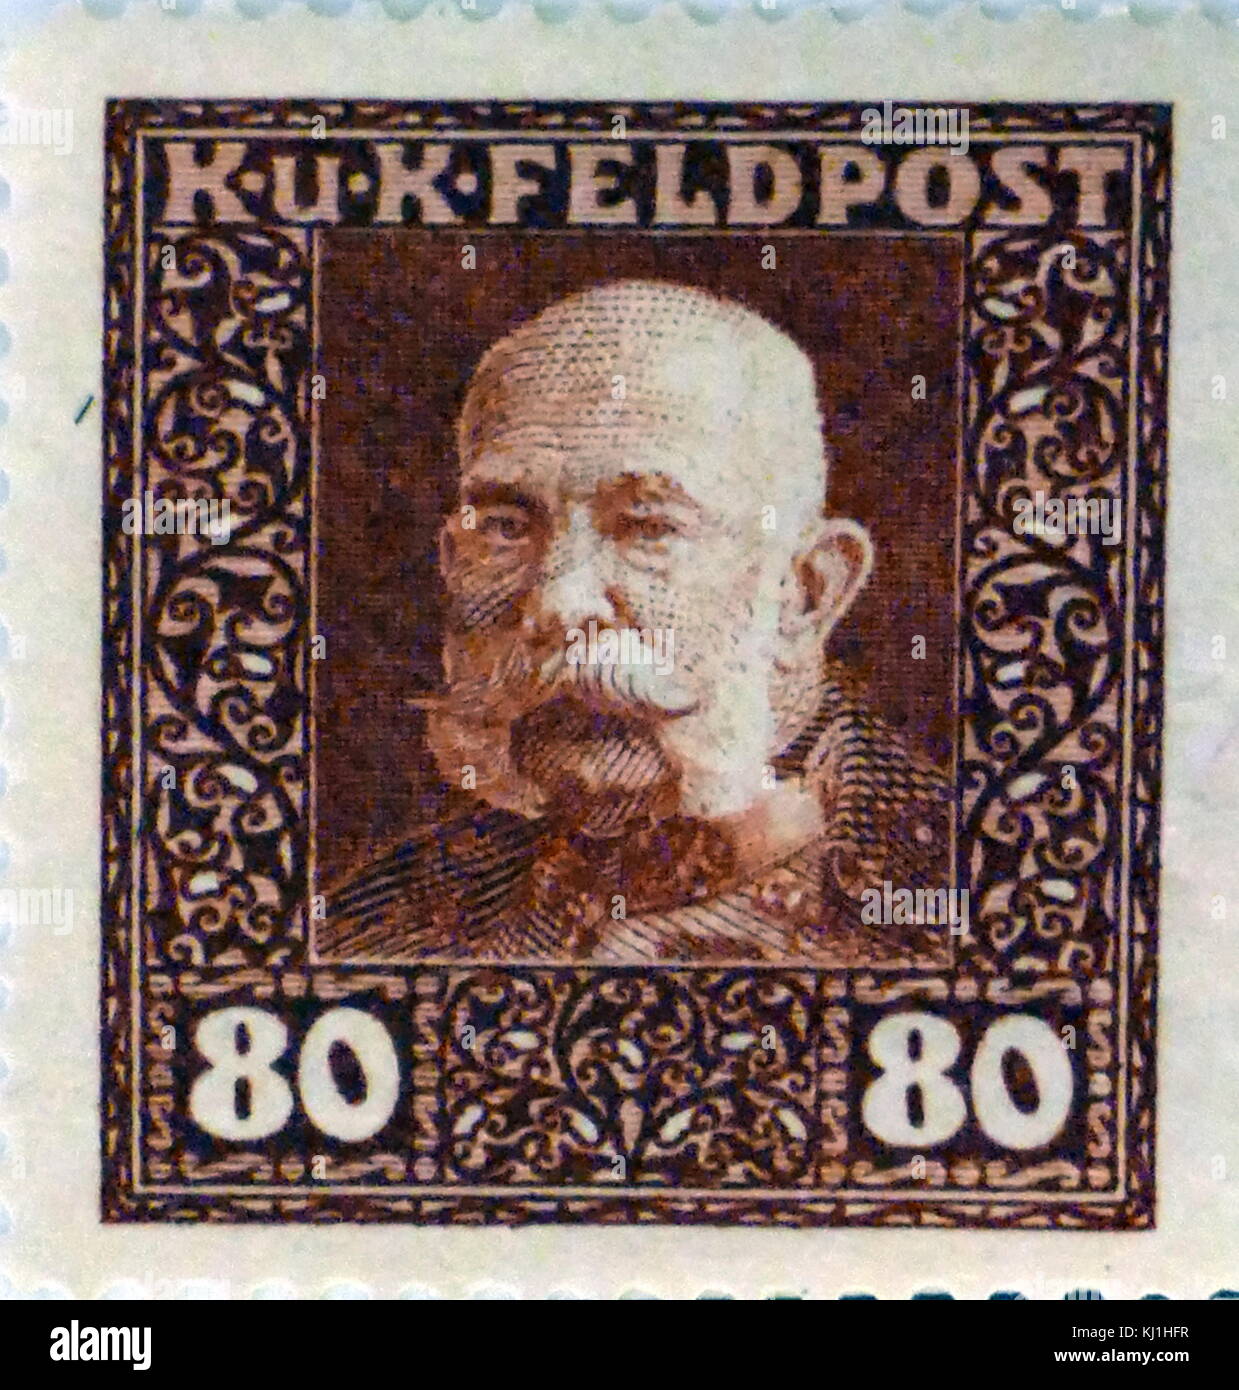 Poste représentant austro-hongrois, Franz Joseph I ou François-Joseph I (1830 - 1916) fut Empereur d'Autriche et Roi de Hongrie, de la Croatie et de la Bohème du 2 décembre 1848 jusqu'à sa mort le 21 novembre 1916. Banque D'Images